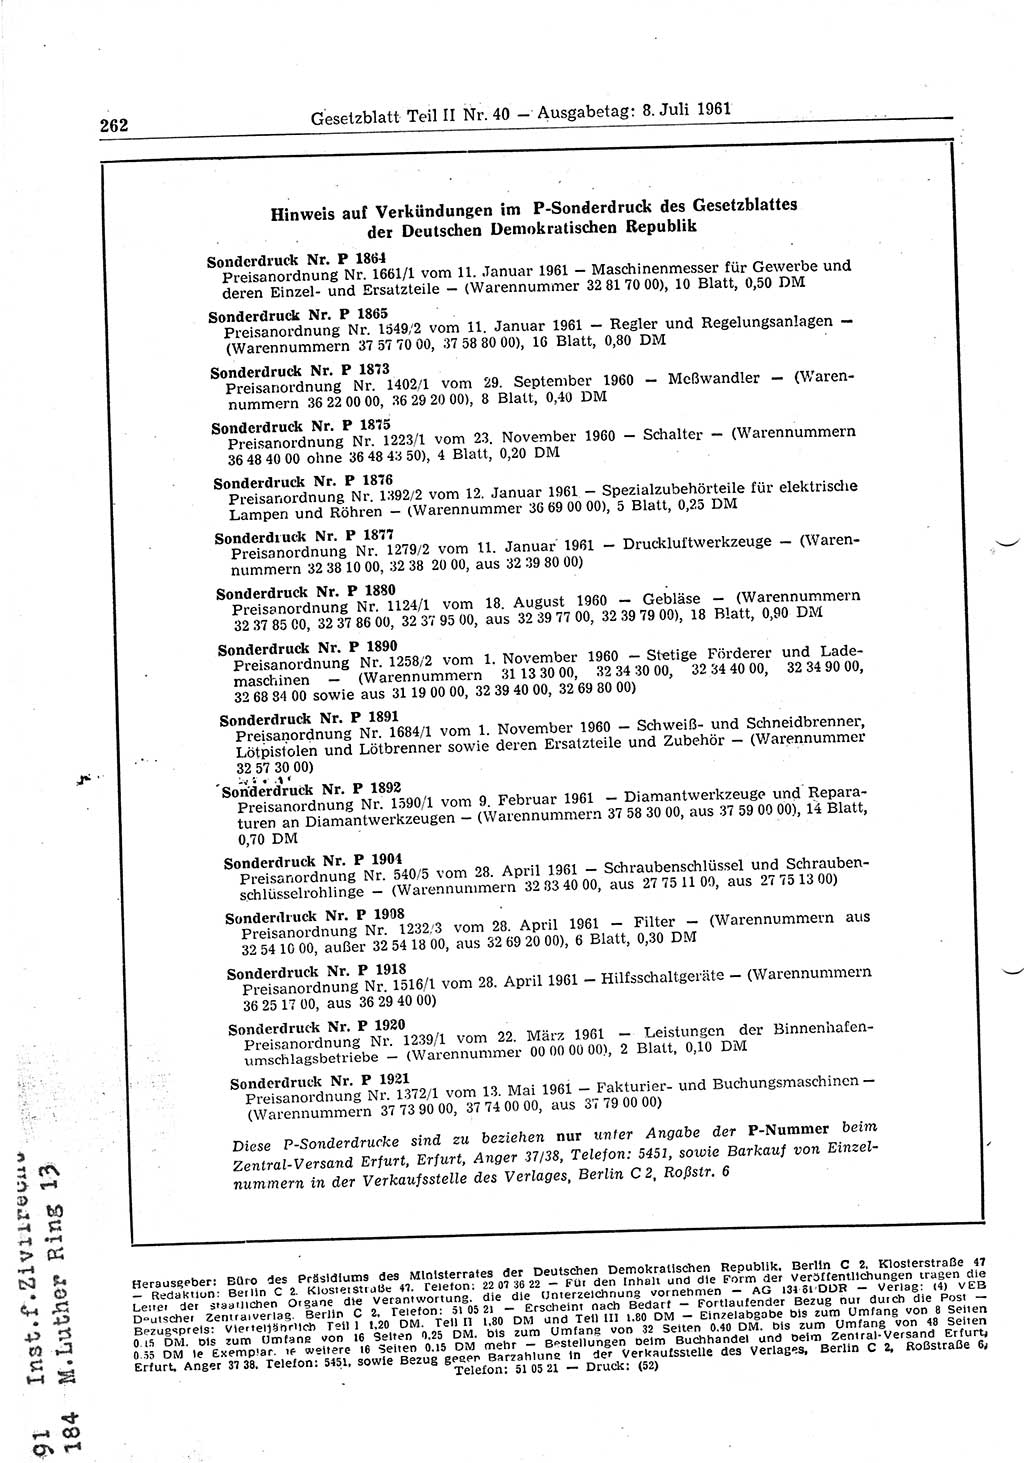 Gesetzblatt (GBl.) der Deutschen Demokratischen Republik (DDR) Teil ⅠⅠ 1961, Seite 262 (GBl. DDR ⅠⅠ 1961, S. 262)